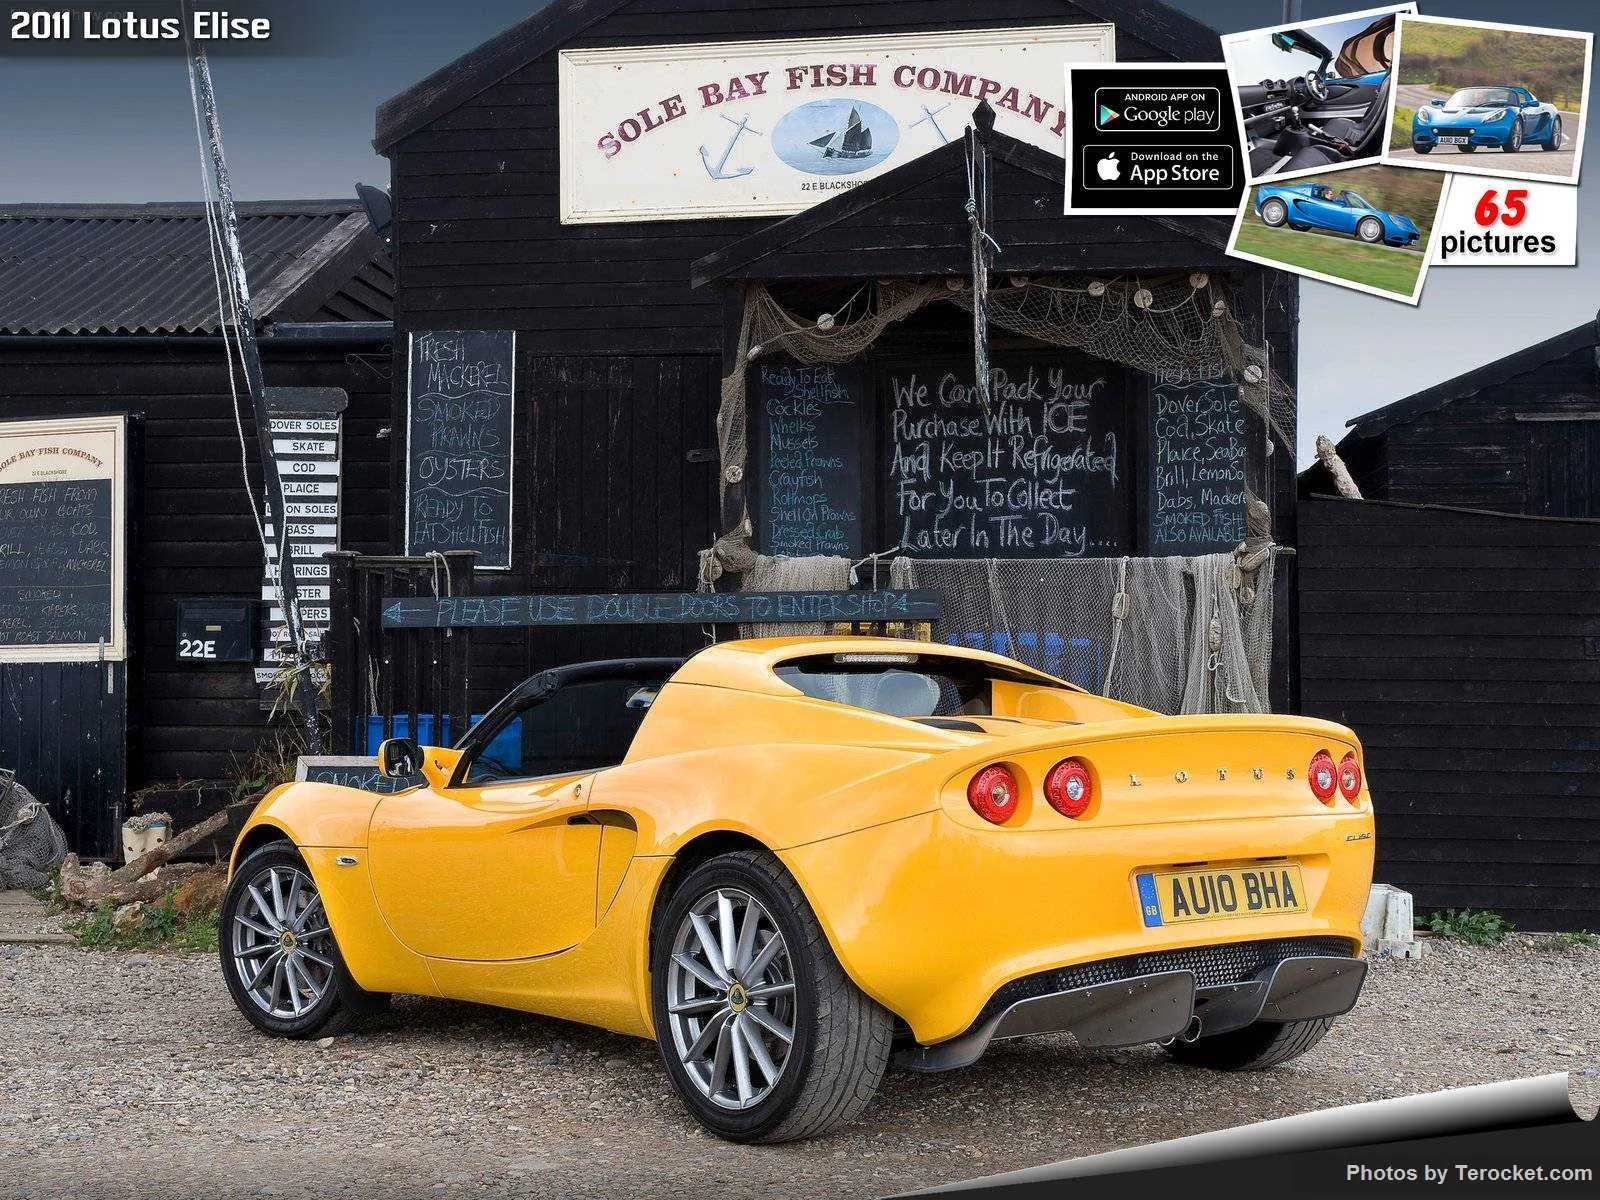 Hình ảnh siêu xe Lotus Elise 2011 & nội ngoại thất